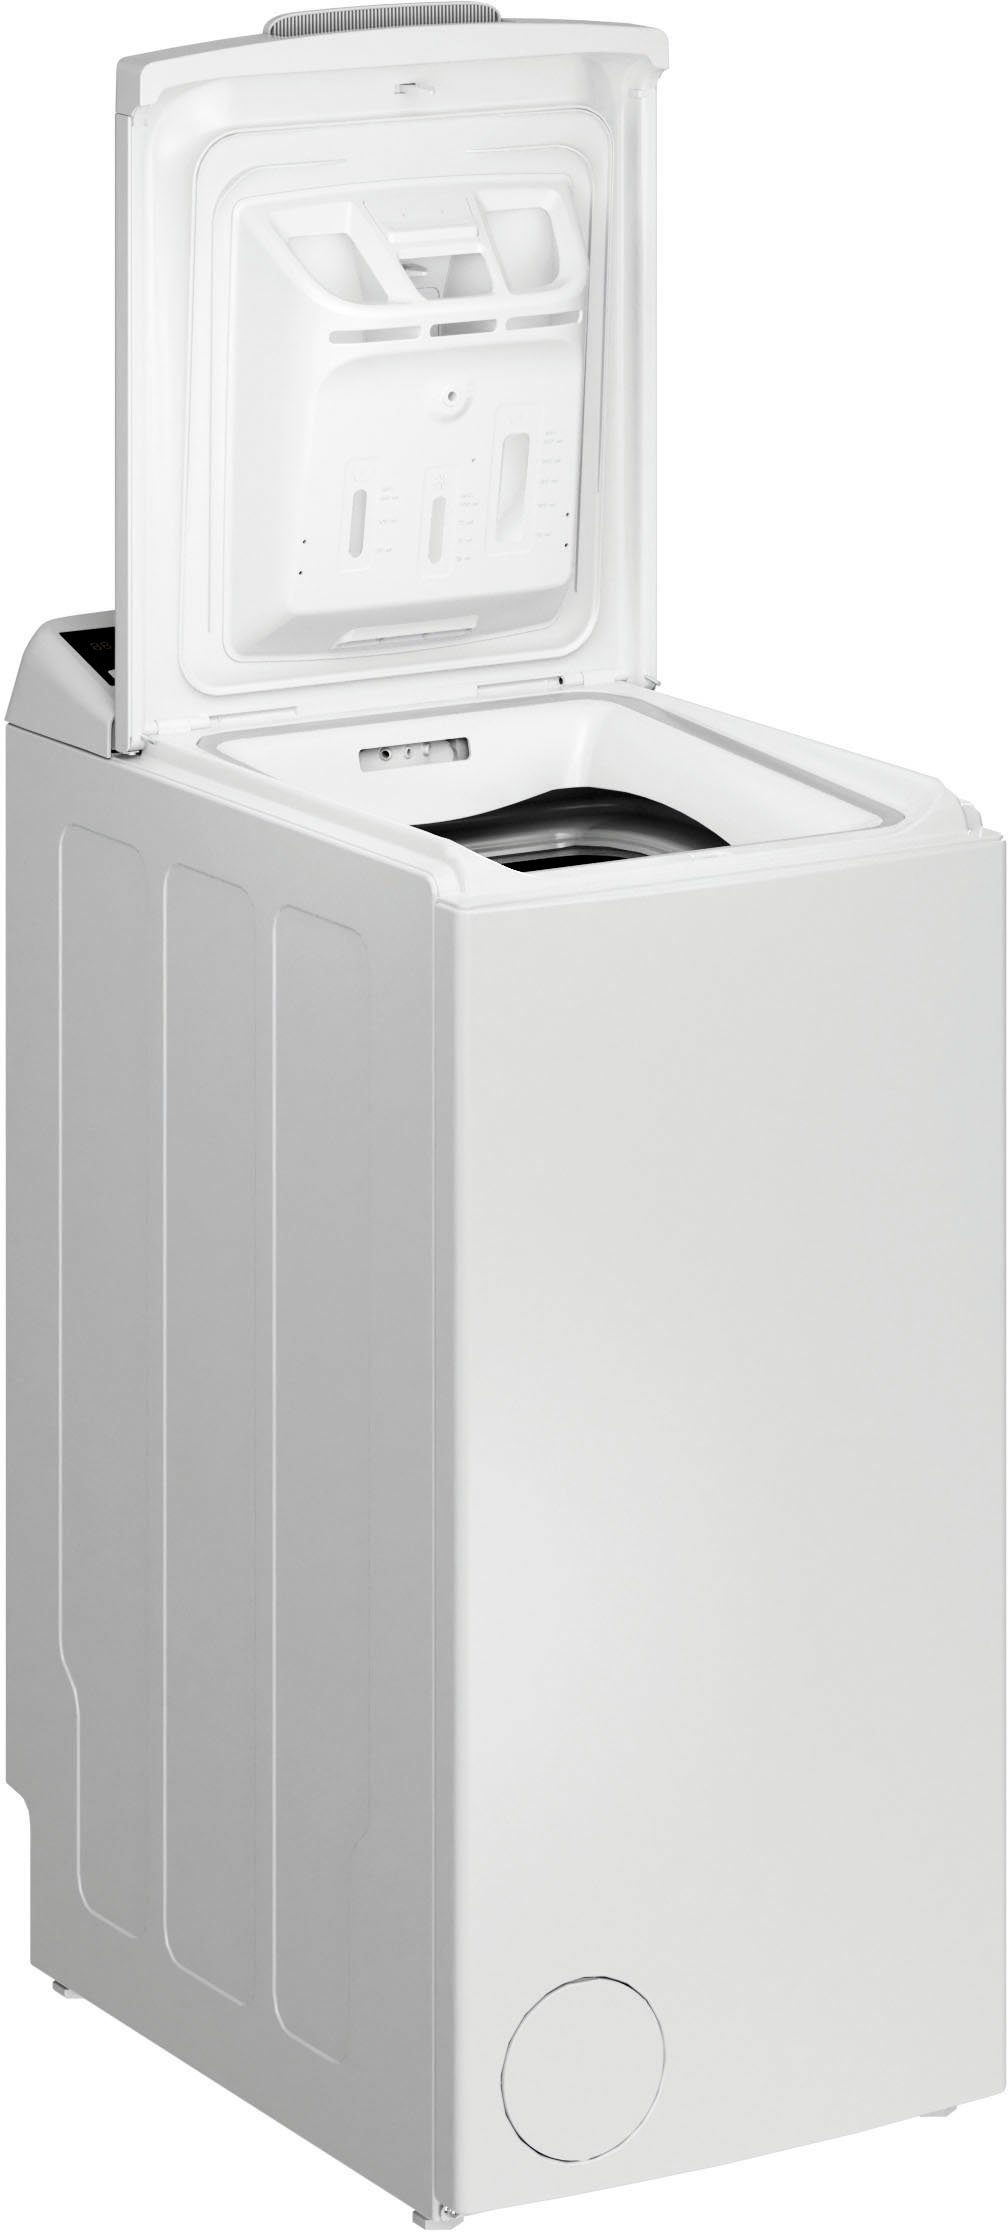 Privileg Waschmaschine Toplader PWT E71253P N (DE), 7 kg, 1200 U/min